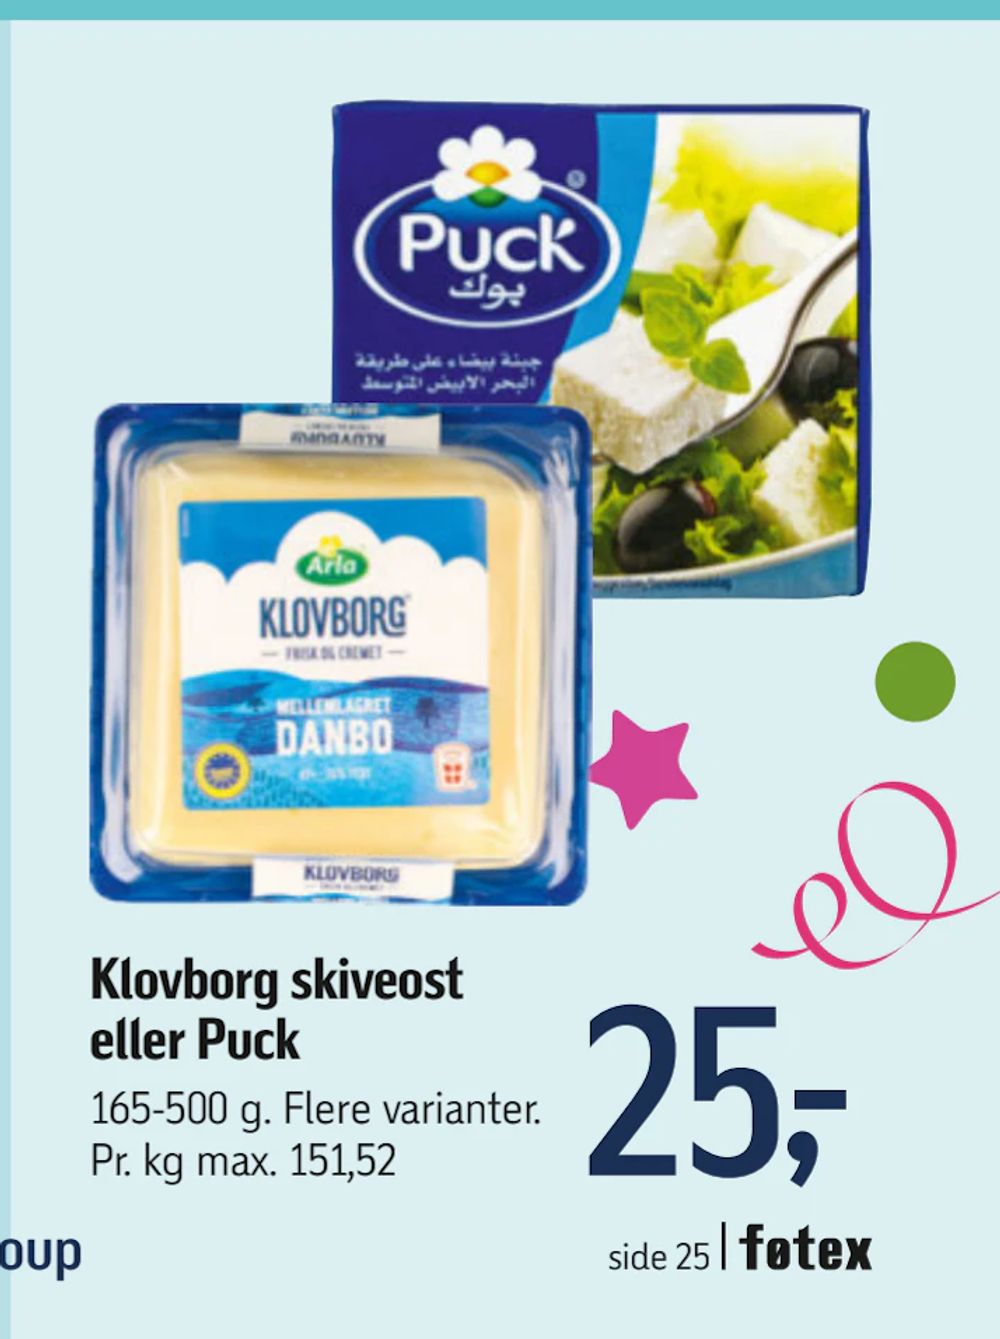 Tilbud på Klovborg skiveost eller Puck fra føtex til 25 kr.